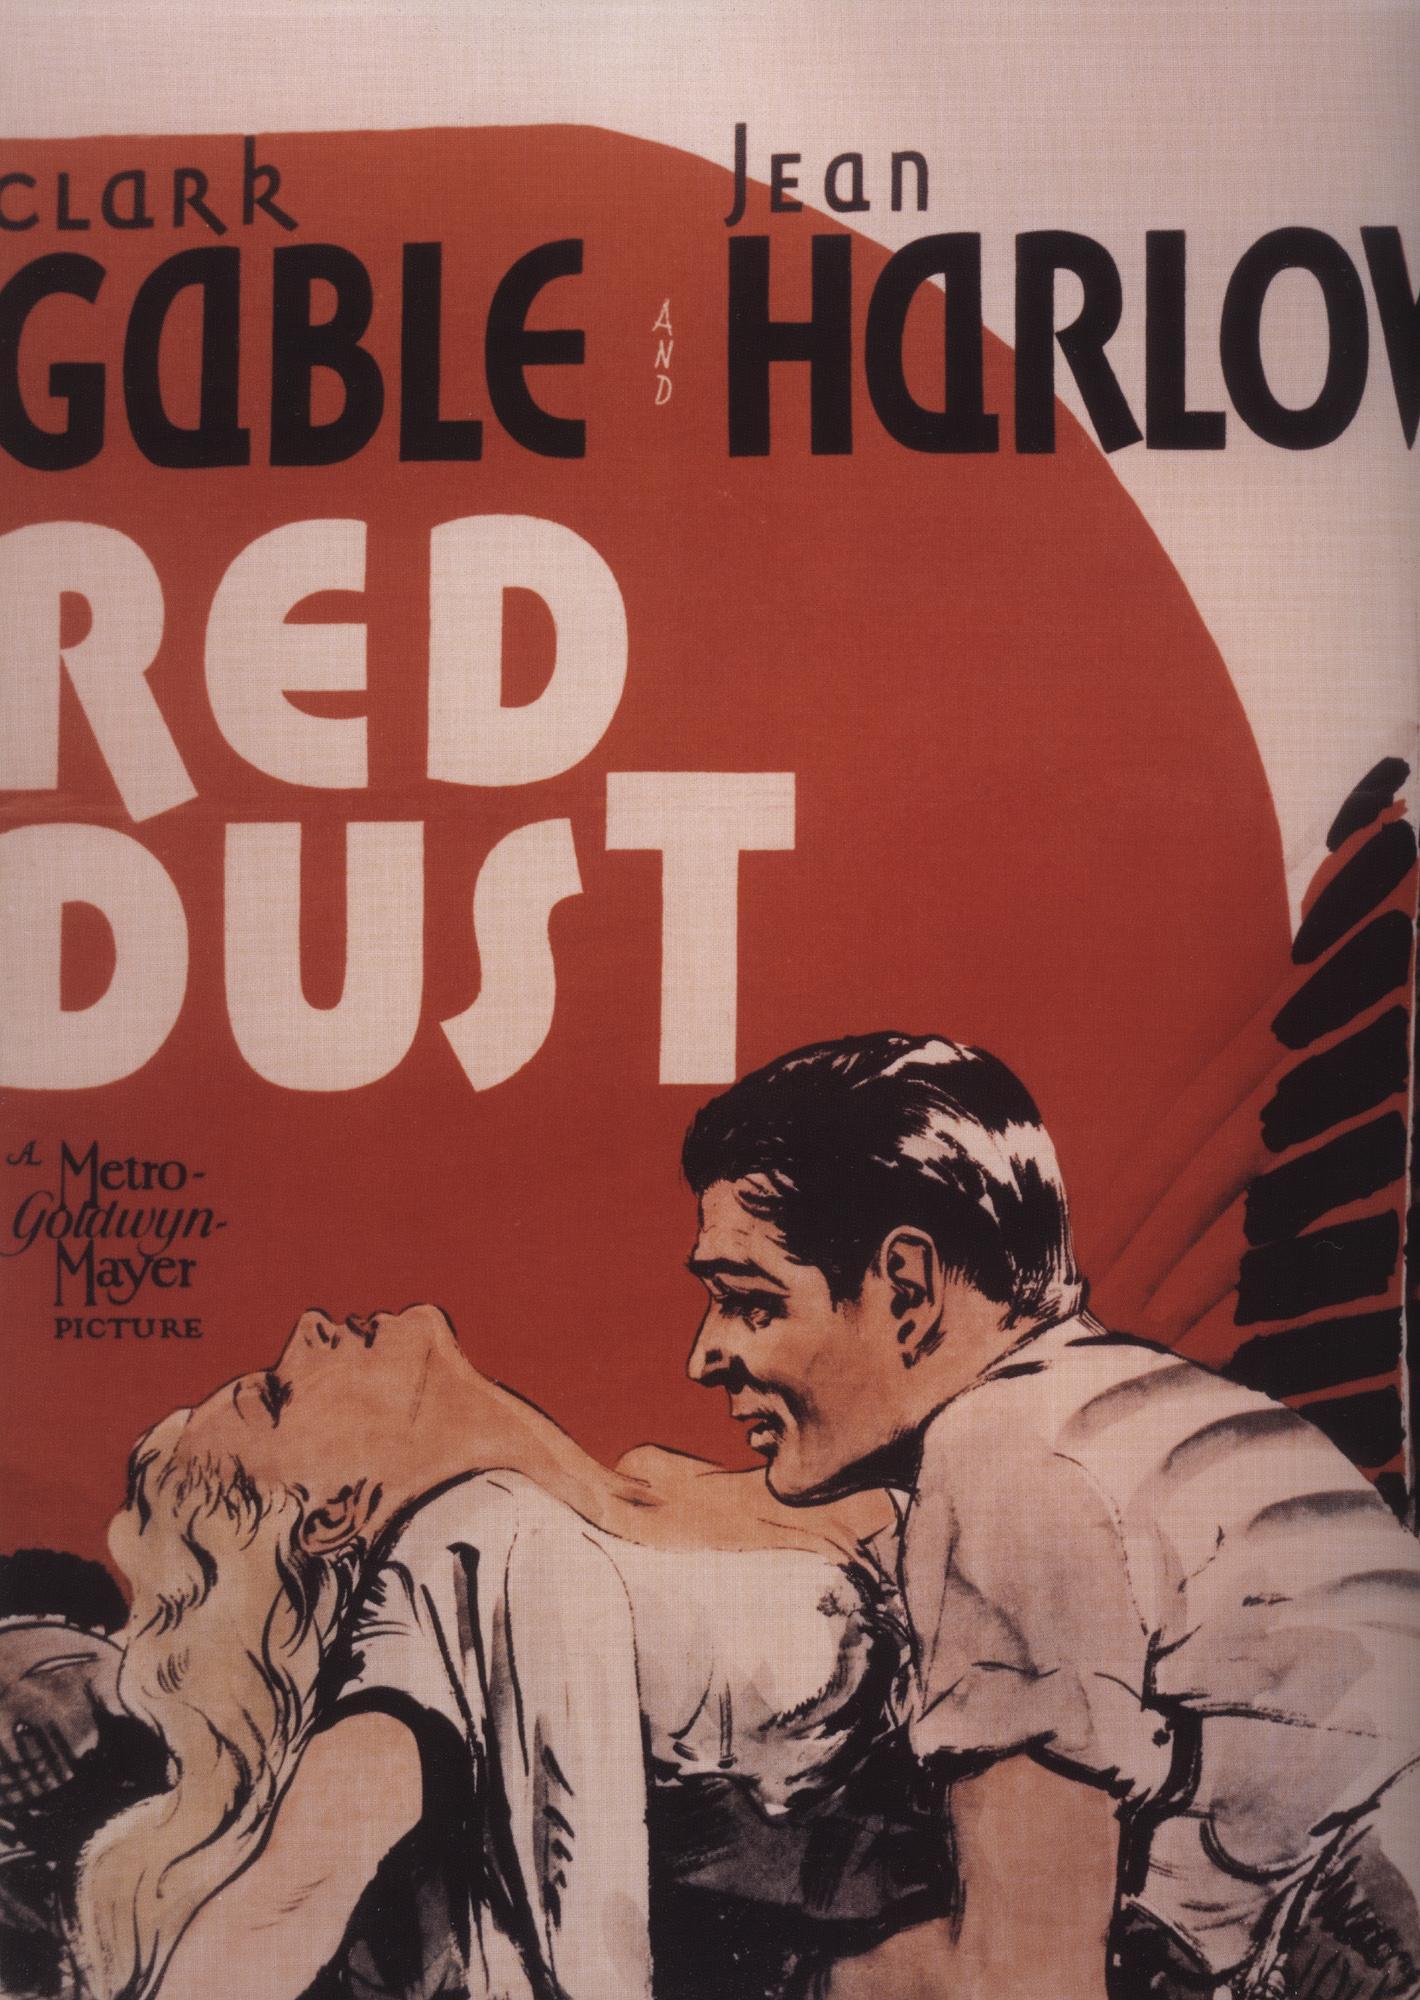 Постер фильма Красная пыль | Red Dust